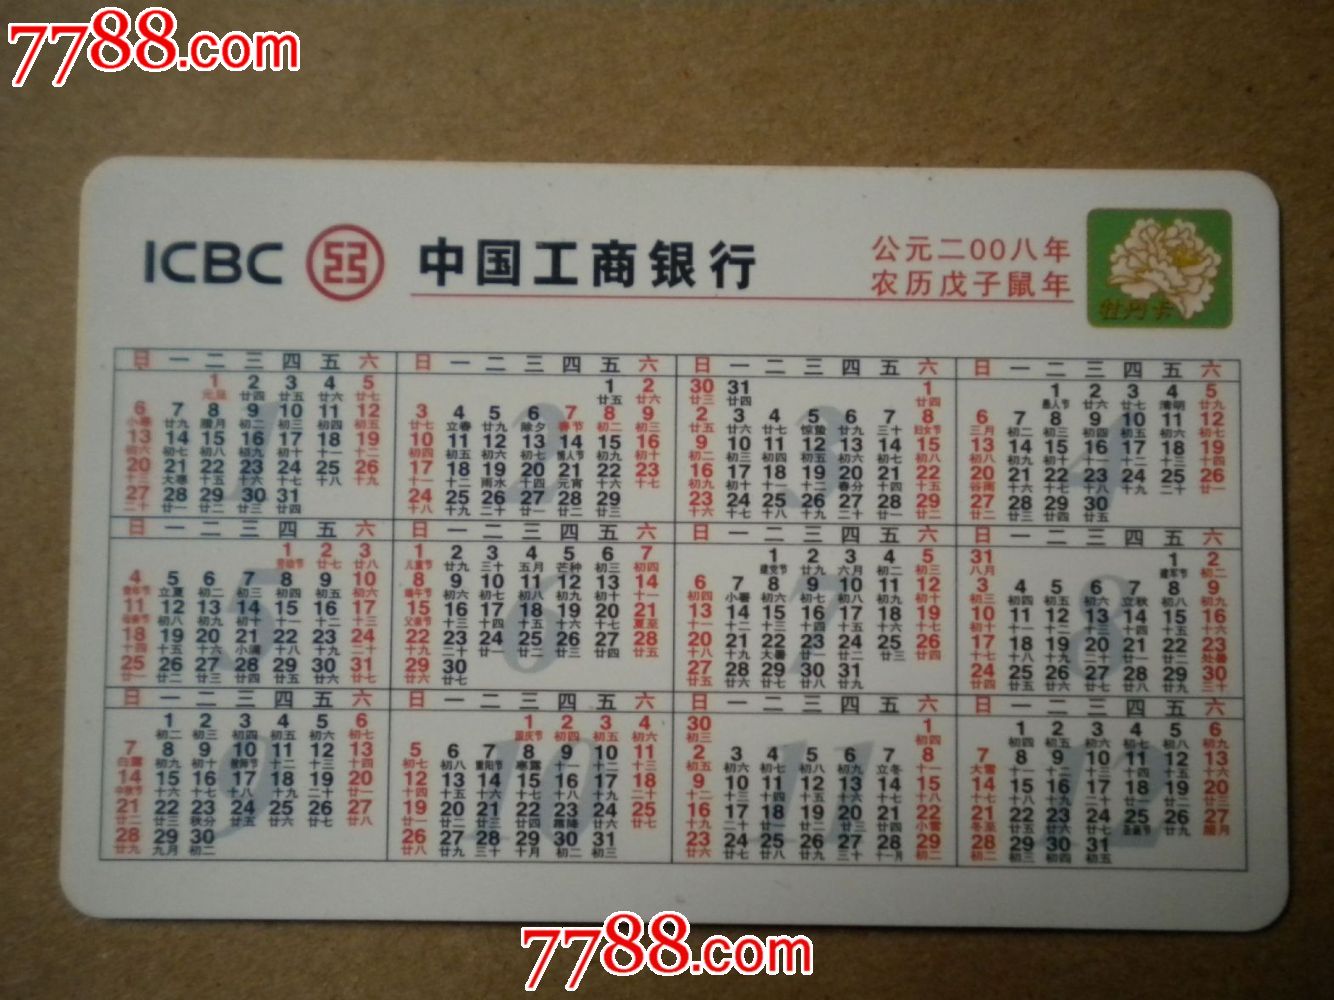 中国工商银行2005年鼠年历卡